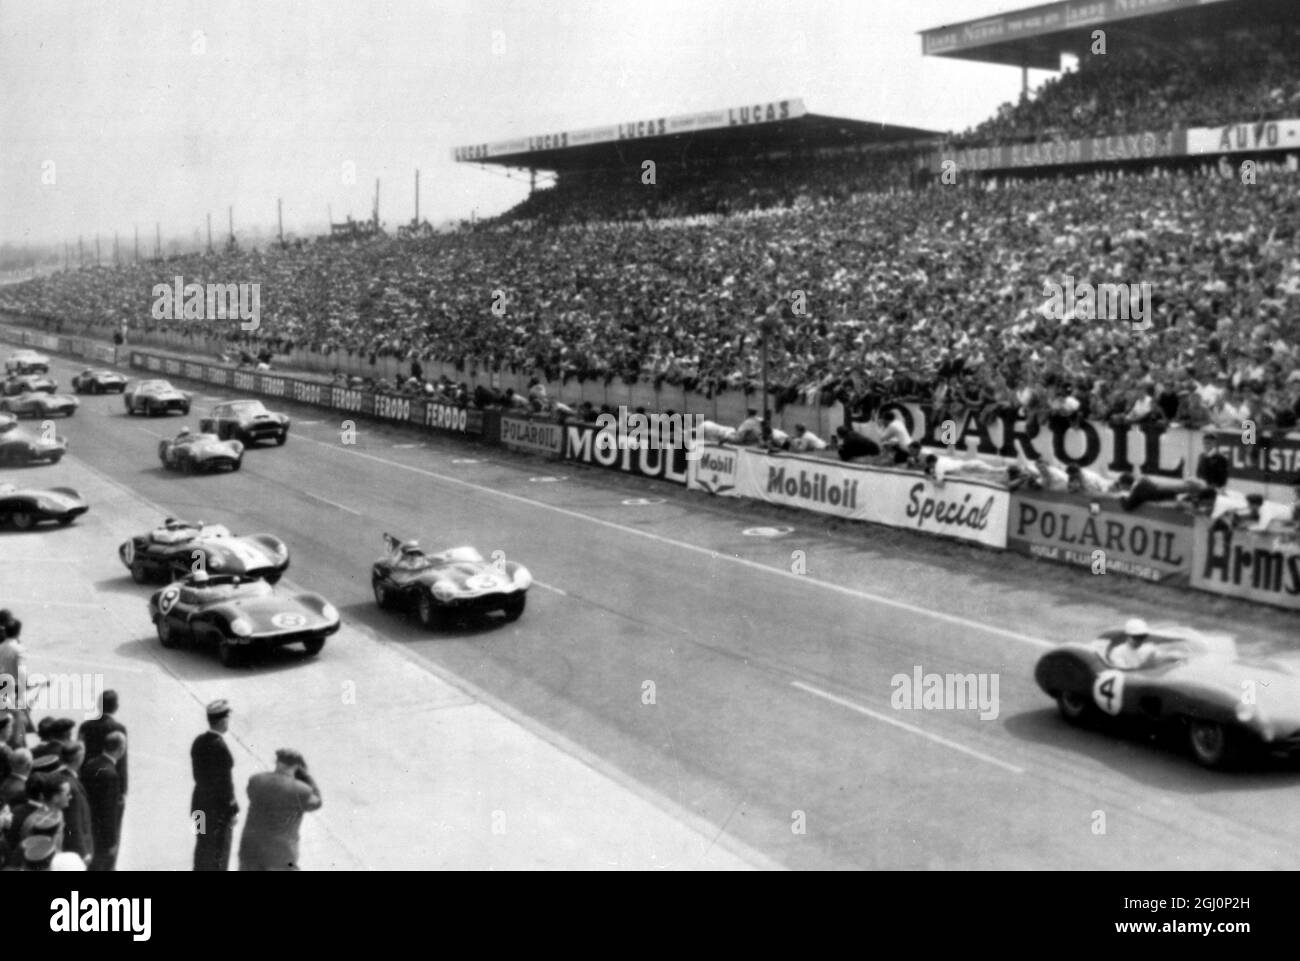 Moss führt vom Start zum Grand Prix von Le Mans. Le Mans, Frankreich; beim Start des Grand Prix von Le Mans führt der britische Rennfahrer Stirling Moss in einem Aston Martin (Nr. 4) das Feld von 53 Autos an; dahinter steht Gregory von England in einem Jaguar (Nr. 3) Und Flockhart aus Schottland in einem Jaguar (Nr. 8) und Ivor Bueb aus England (Nr.1). Das Grand Prix-Rennen dauert 24 Stunden und ist das aufreibendste und gefährlichste im Rennkalender. 20. Juni 1959 Stockfoto